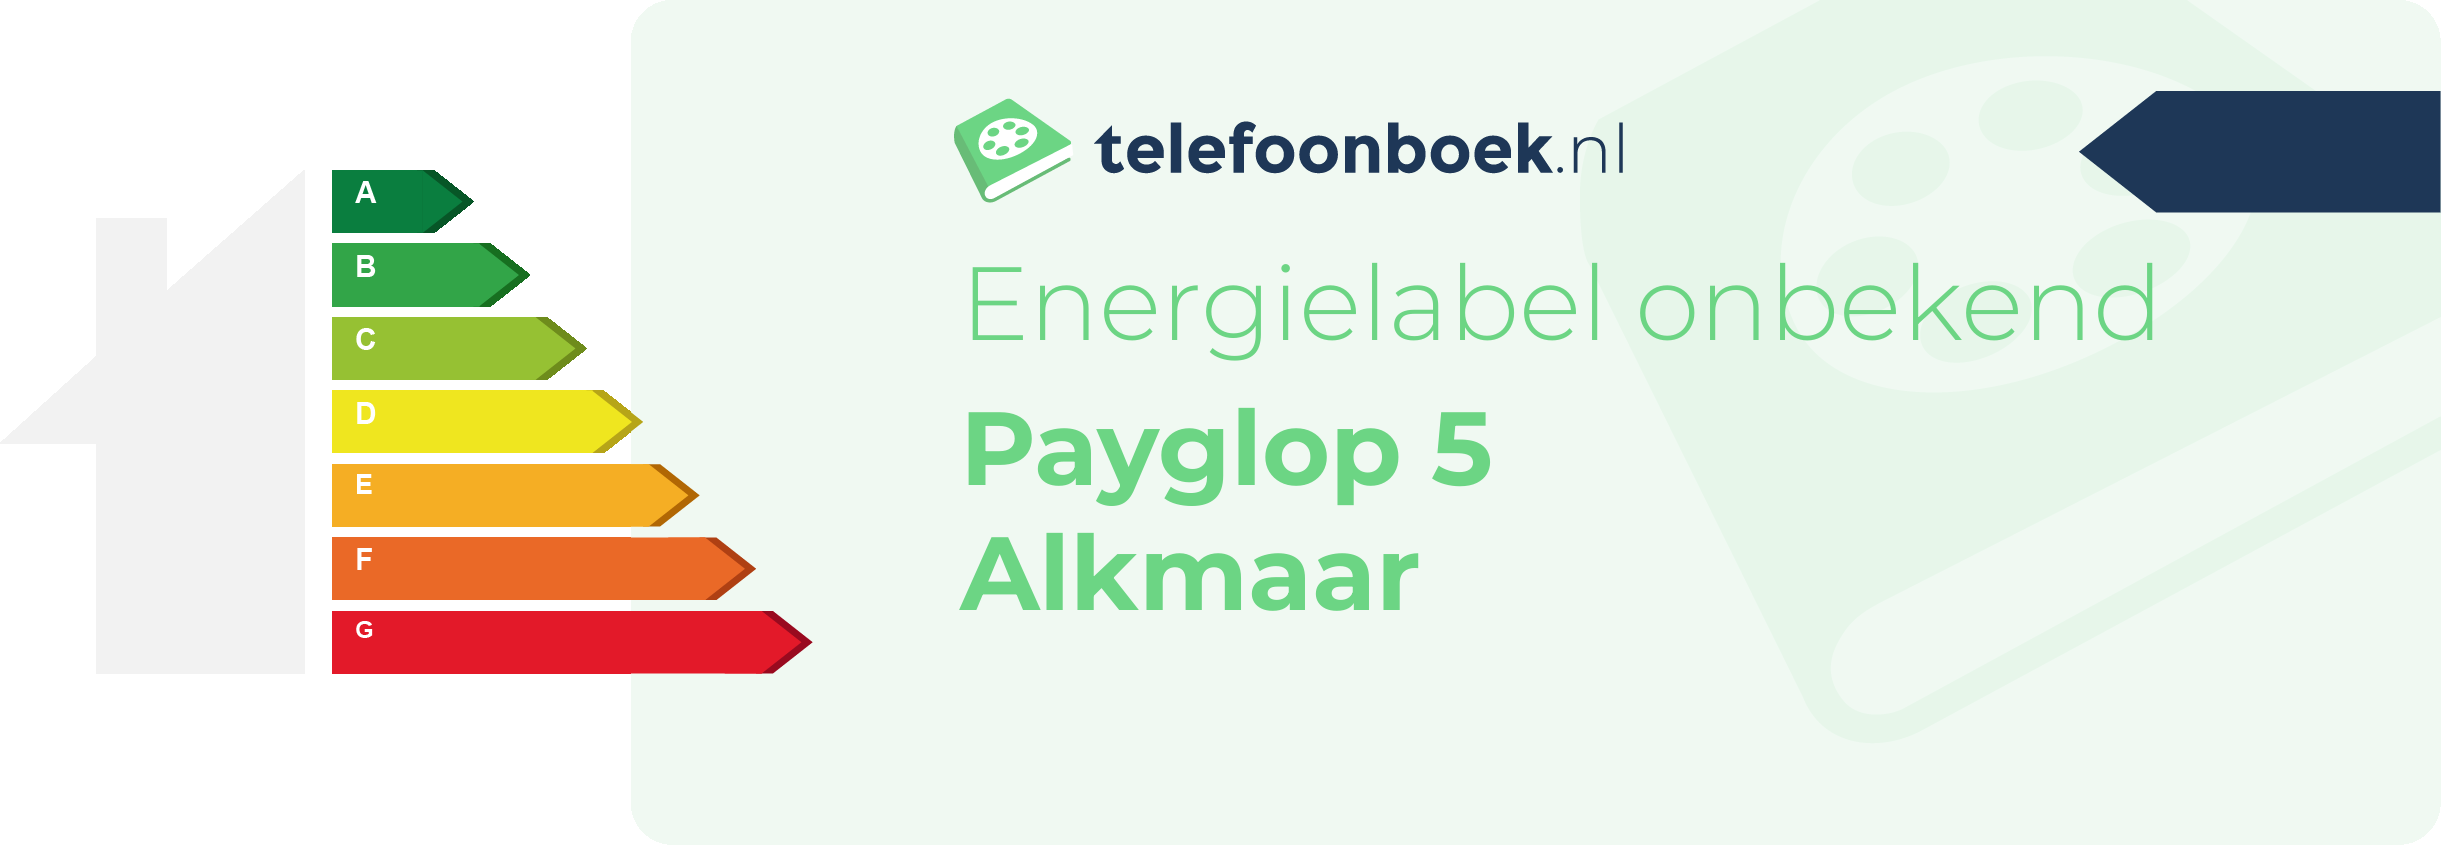 Energielabel Payglop 5 Alkmaar